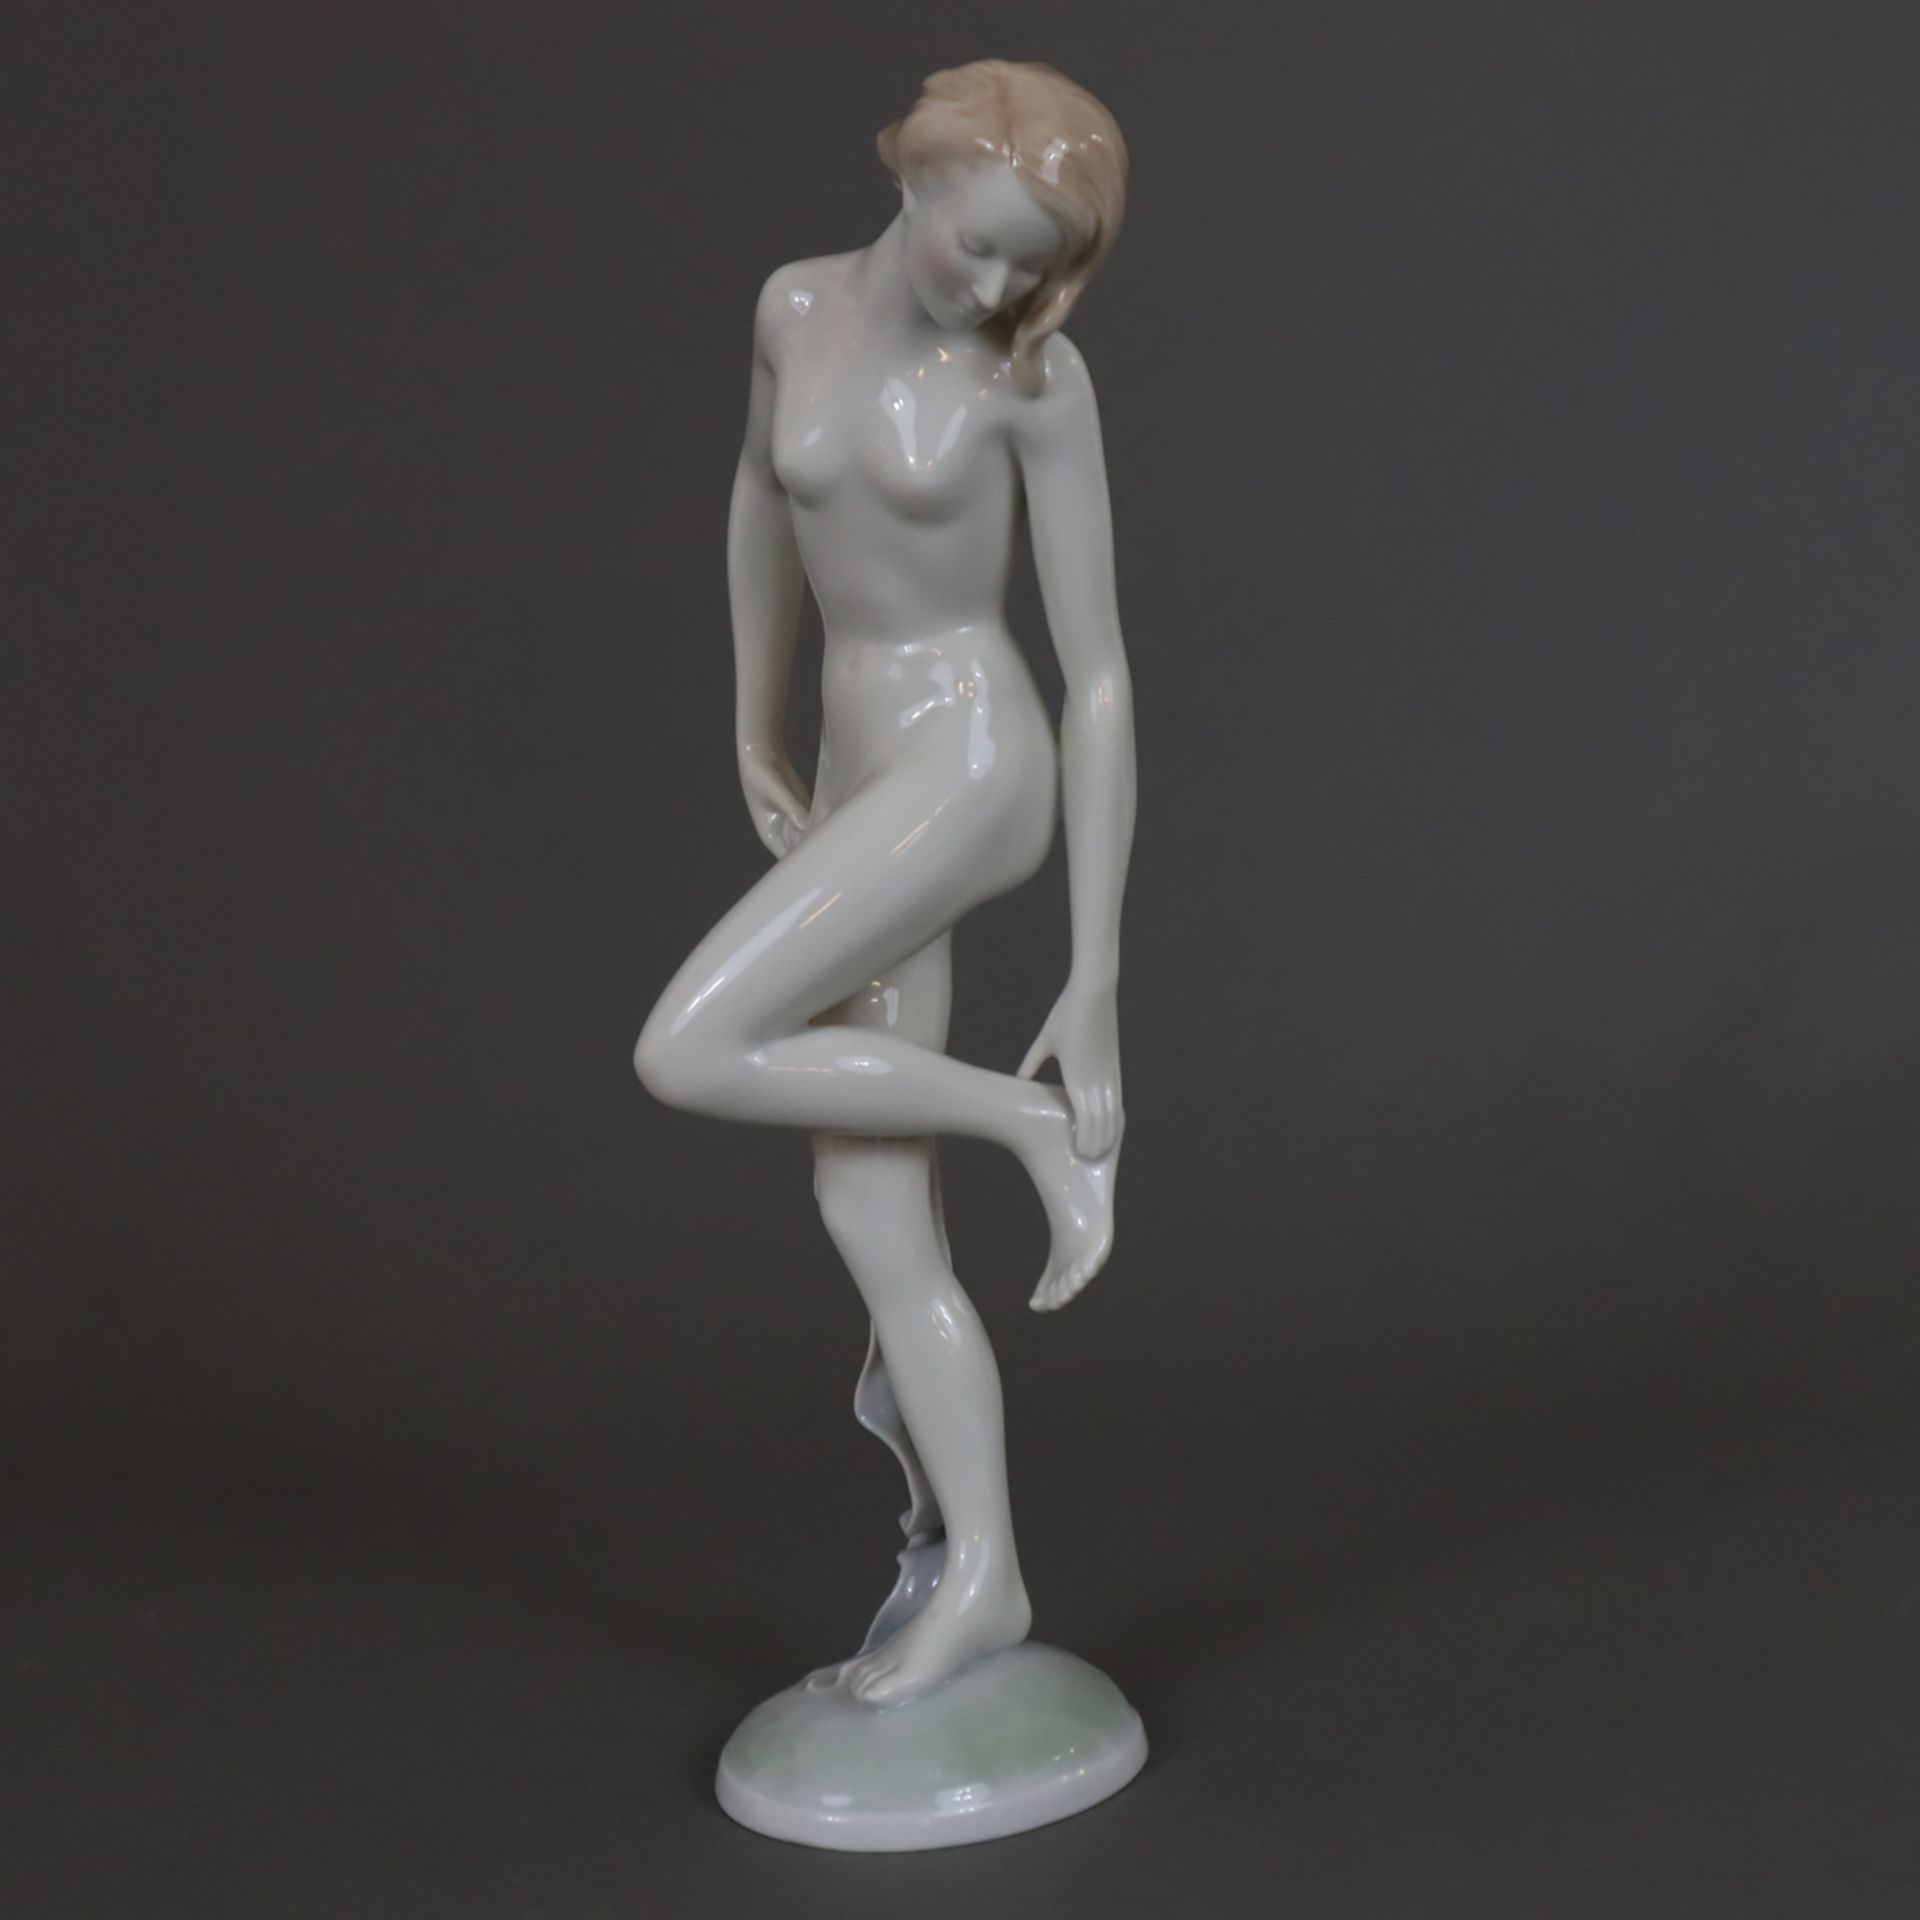 Badende mit Tuch - Metzler & Ortloff, weiblicher Akt im Art-Déco-Stil auf ovaler Plinthe, Porzellan